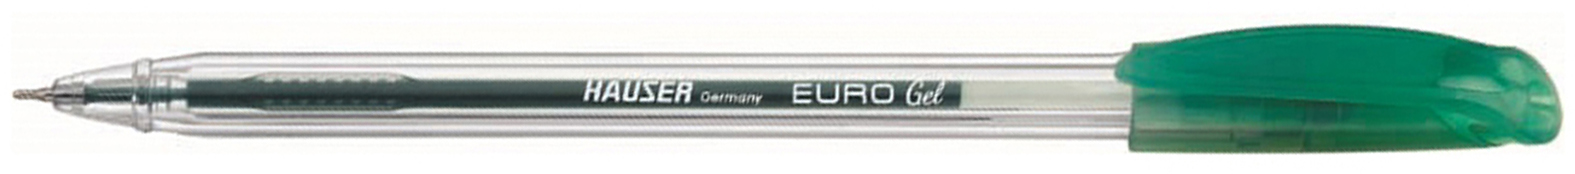 Гелевая ручка HAUSER Euro Gel H6058G-green